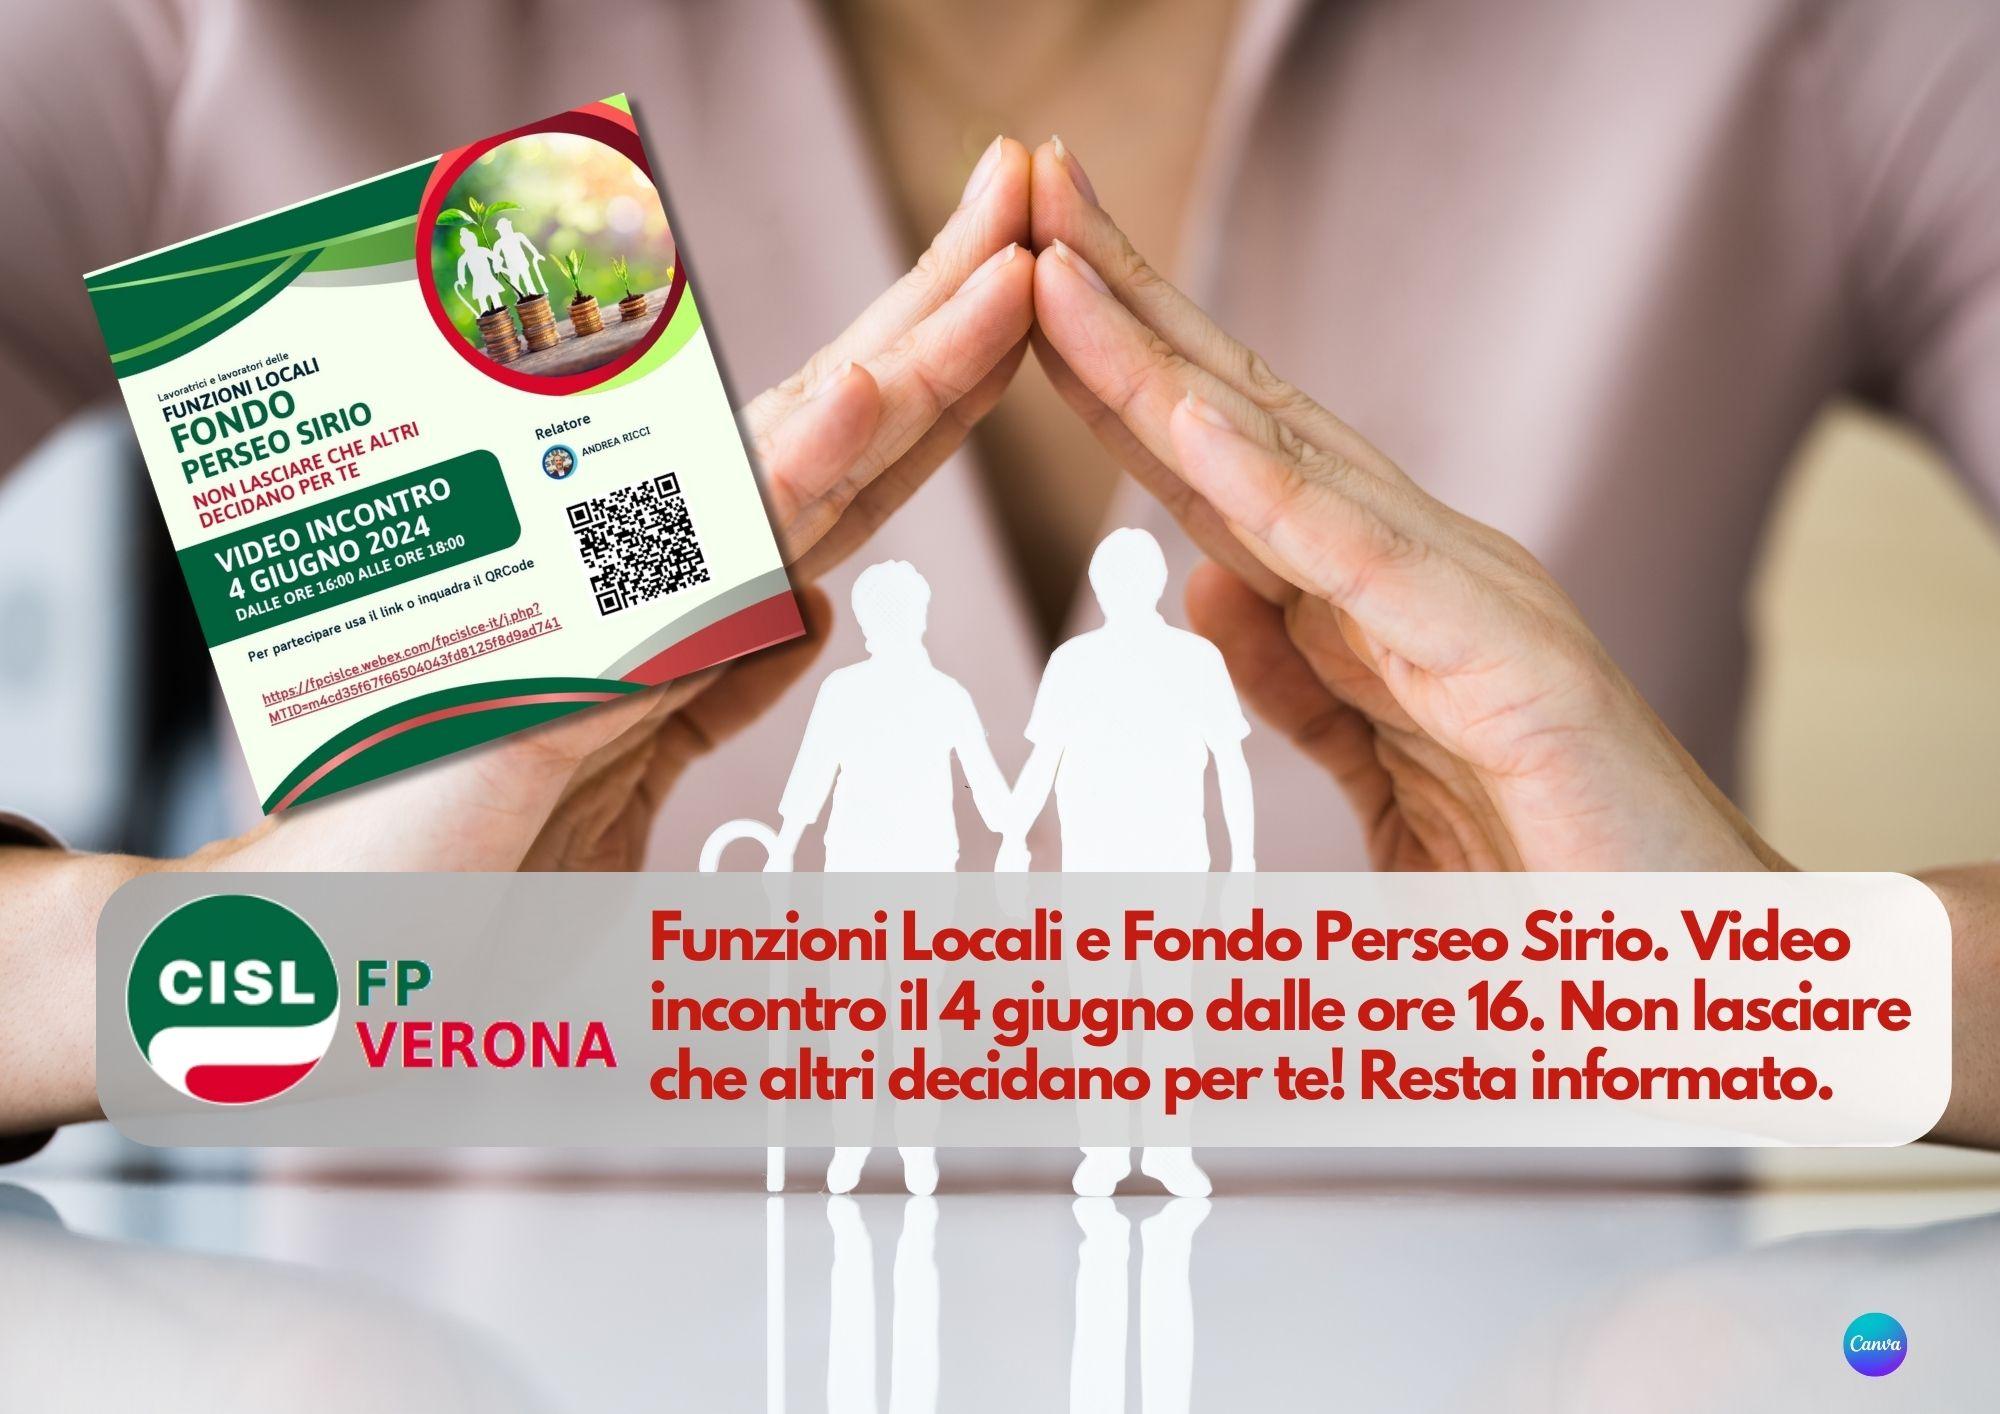 CISL FP Verona. Funzioni Locali e Fondo Perseo Sirio. Video incontro il 4 giugno dalle ore 16